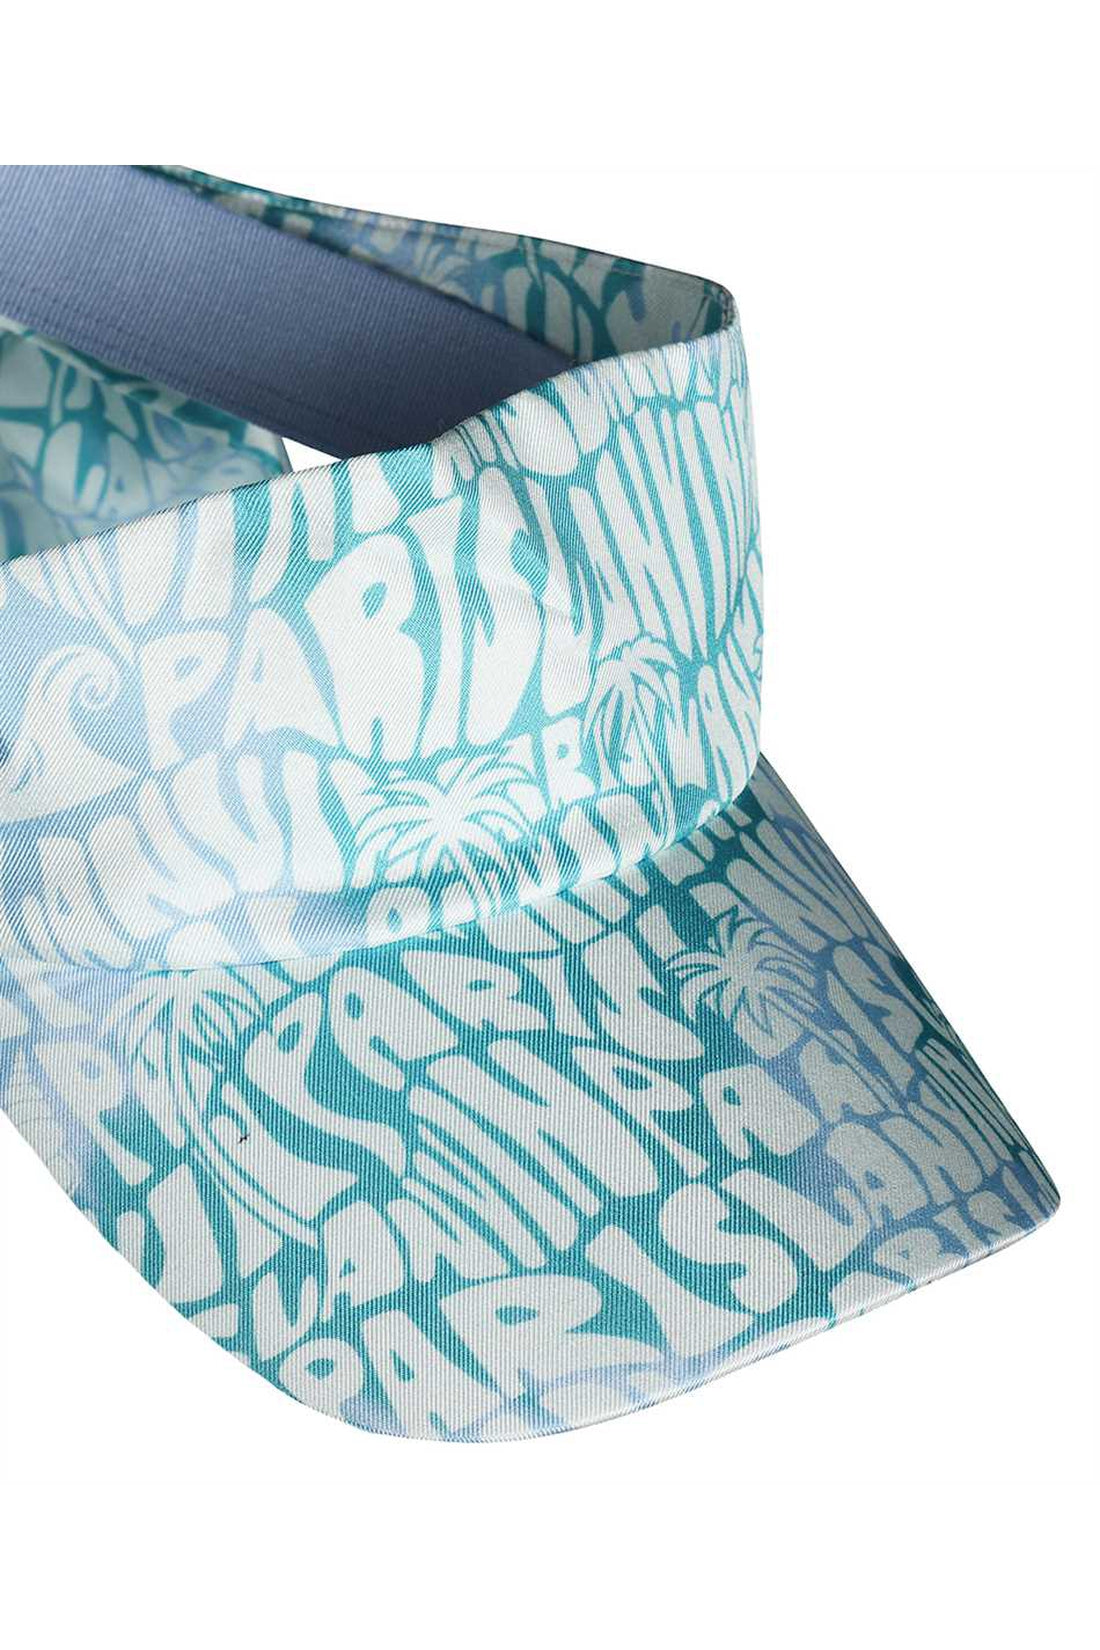 Lanvin-OUTLET-SALE-Printed silk visor-ARCHIVIST